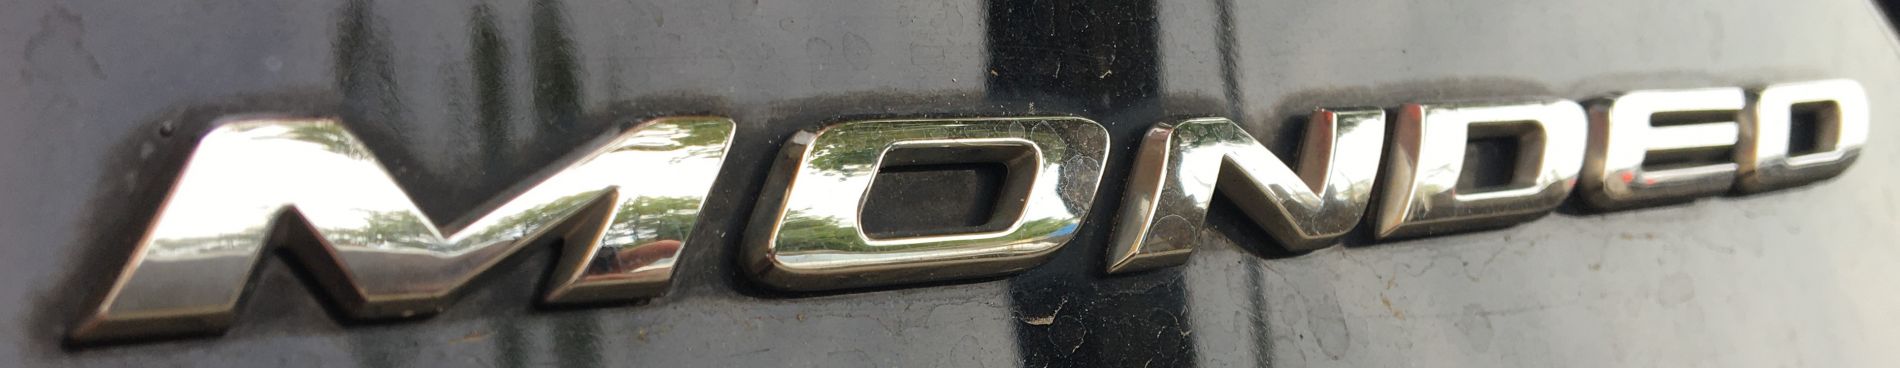 Kodowanie klucza do auta Ford Mondeo z 2017 roku